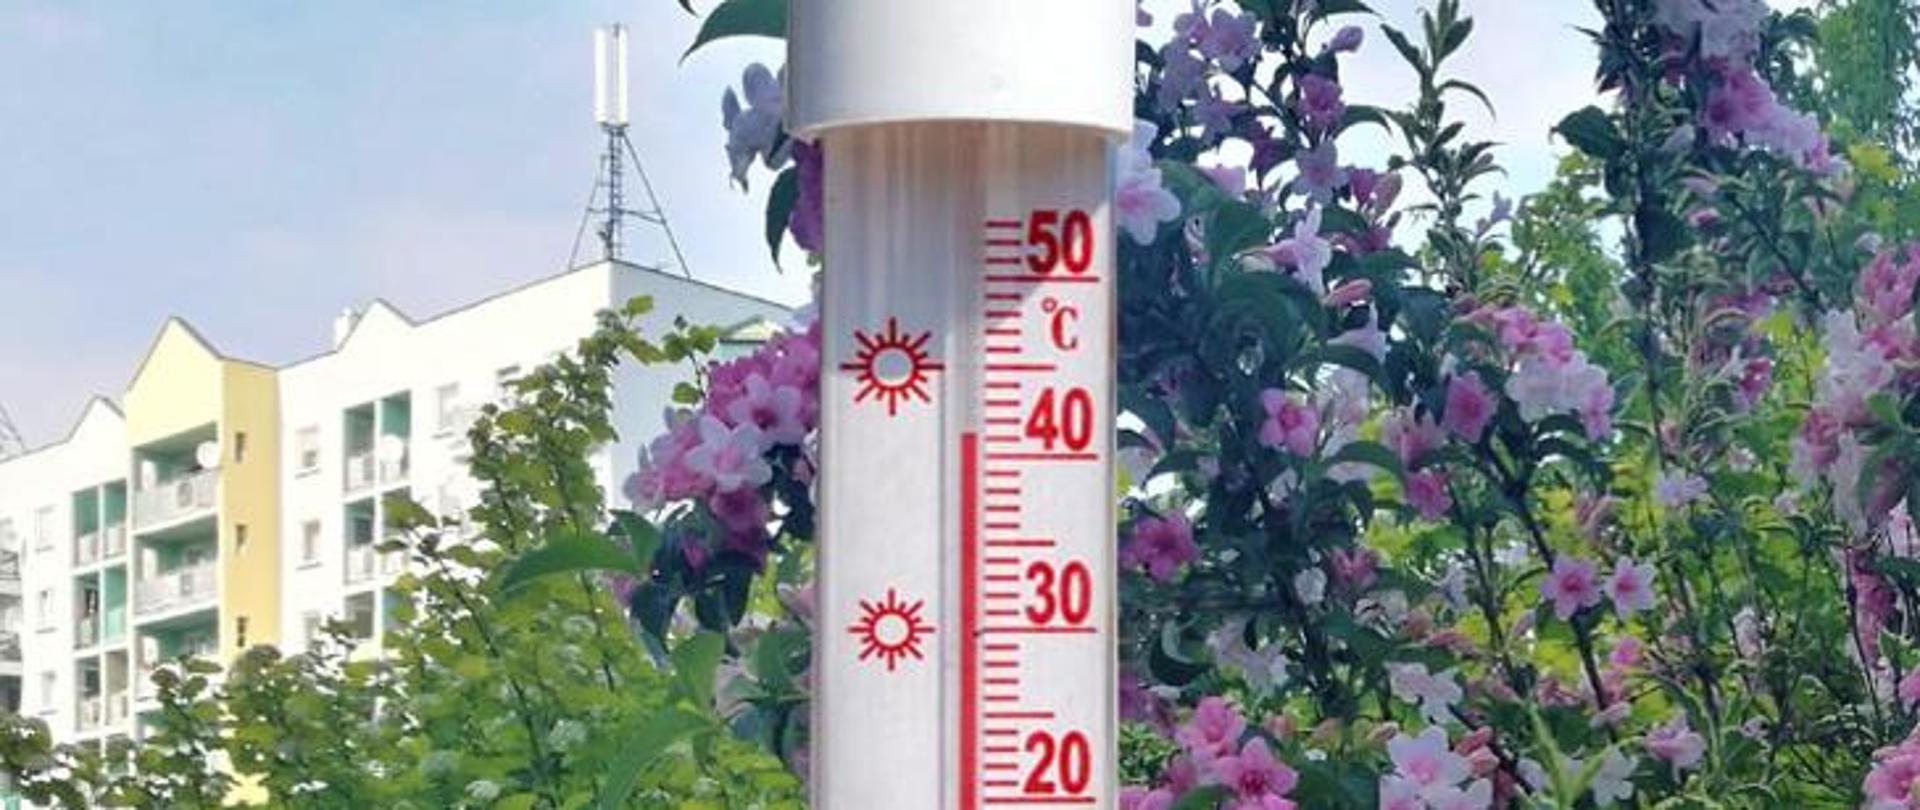 Zdjęcie przedstawia termometr rtęciowy.
W tle drzewa i kwiaty oraz budynki mieszkalne.